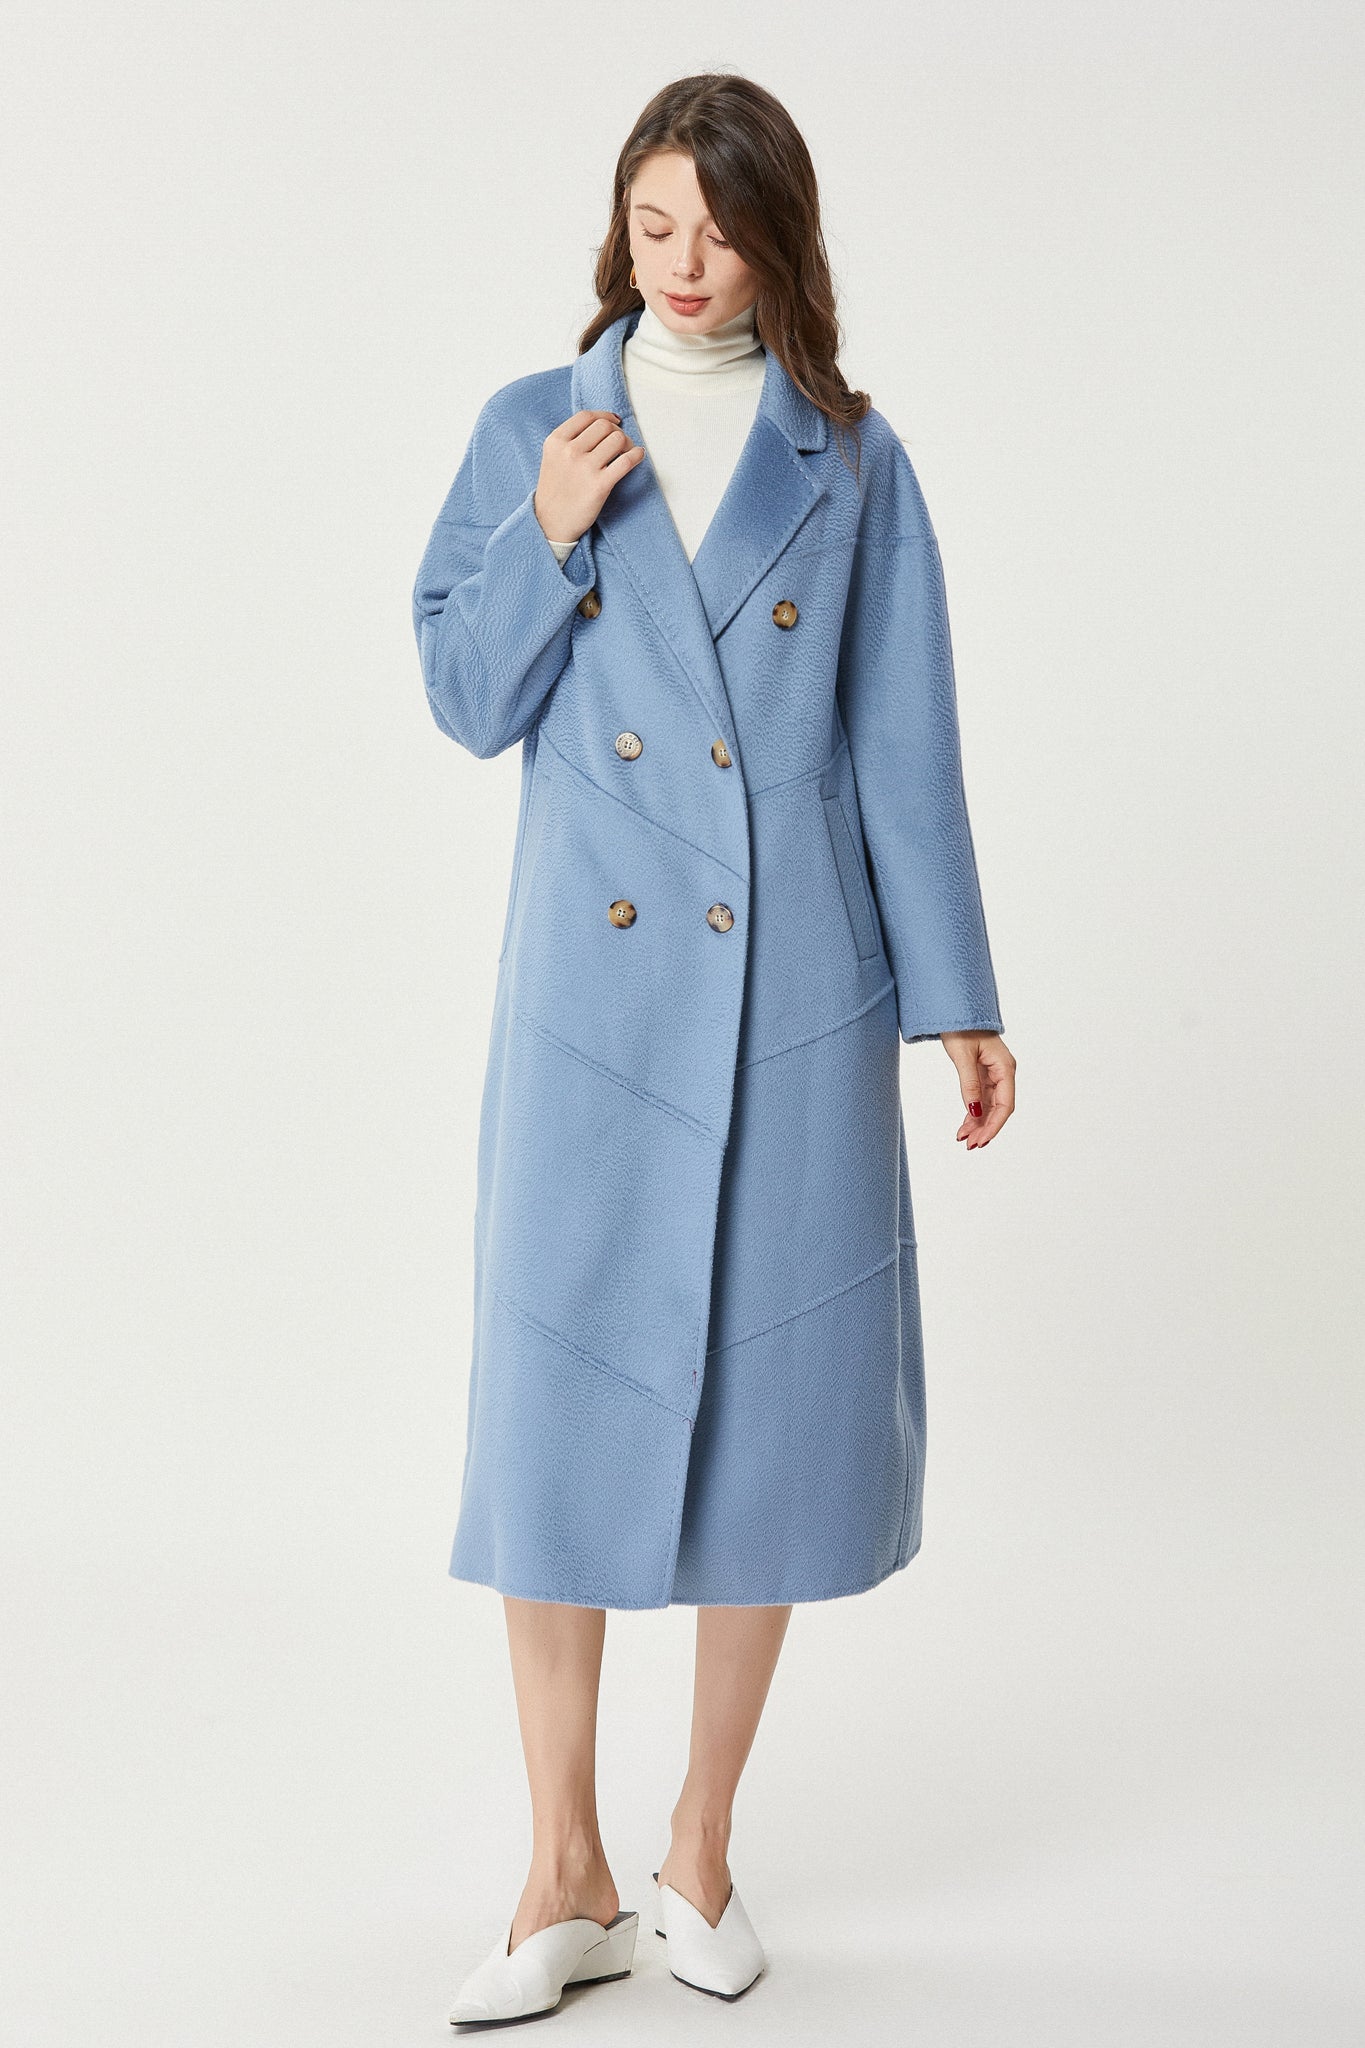 Fangyan | Blue Andrea Wool Coat